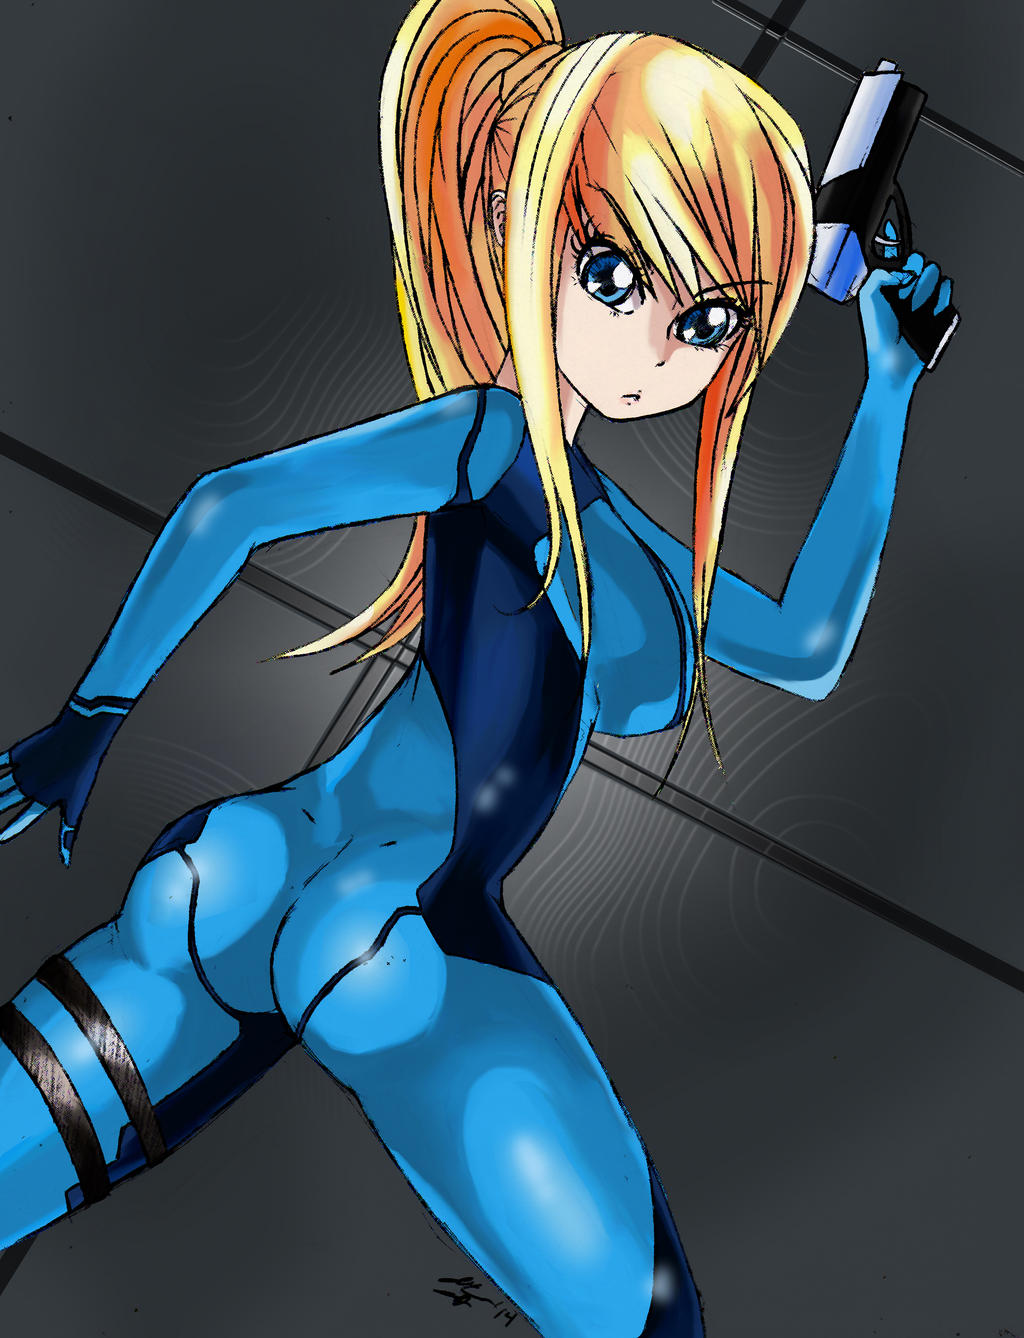 Zero Suit Samus Metroid Art free images, download Zero Suit Samus Metroid.....